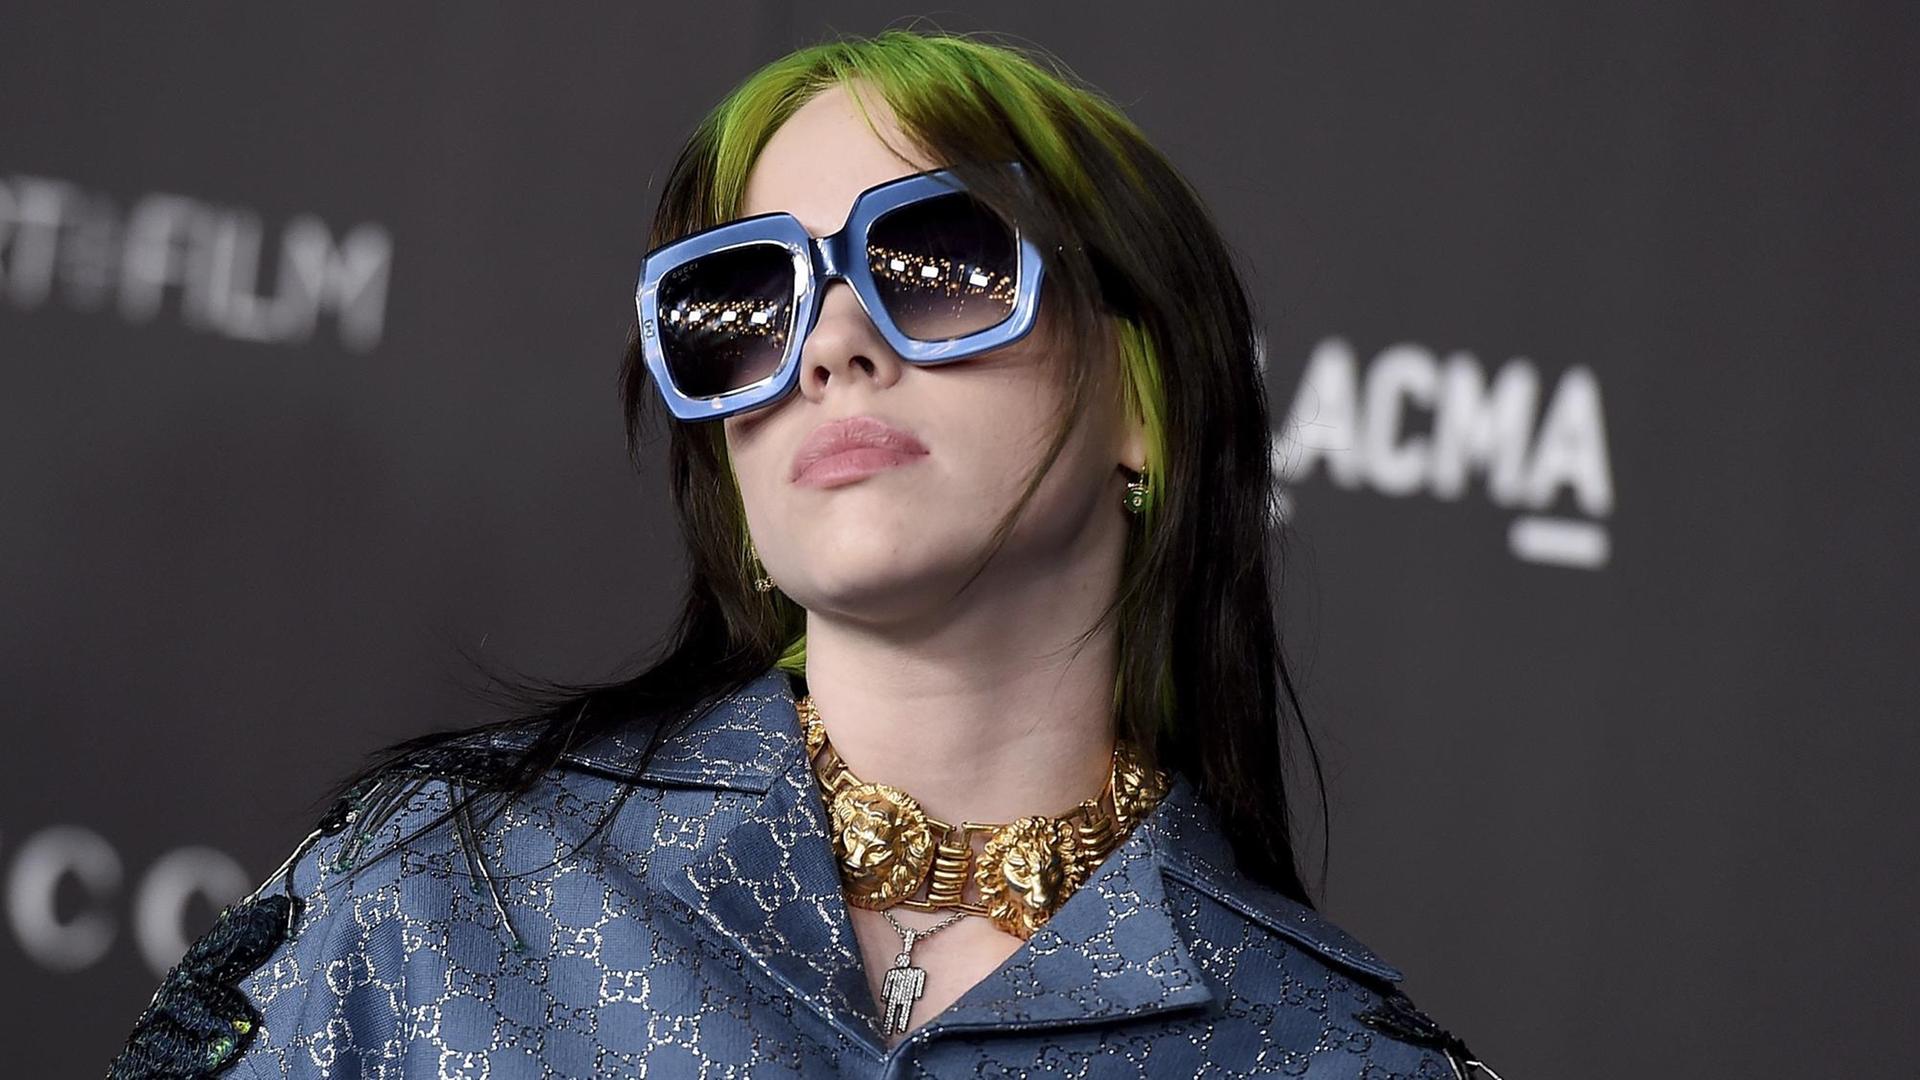 Billie Eilish posiert mit großer Sonnenbrille und grün-schwarzem Haar